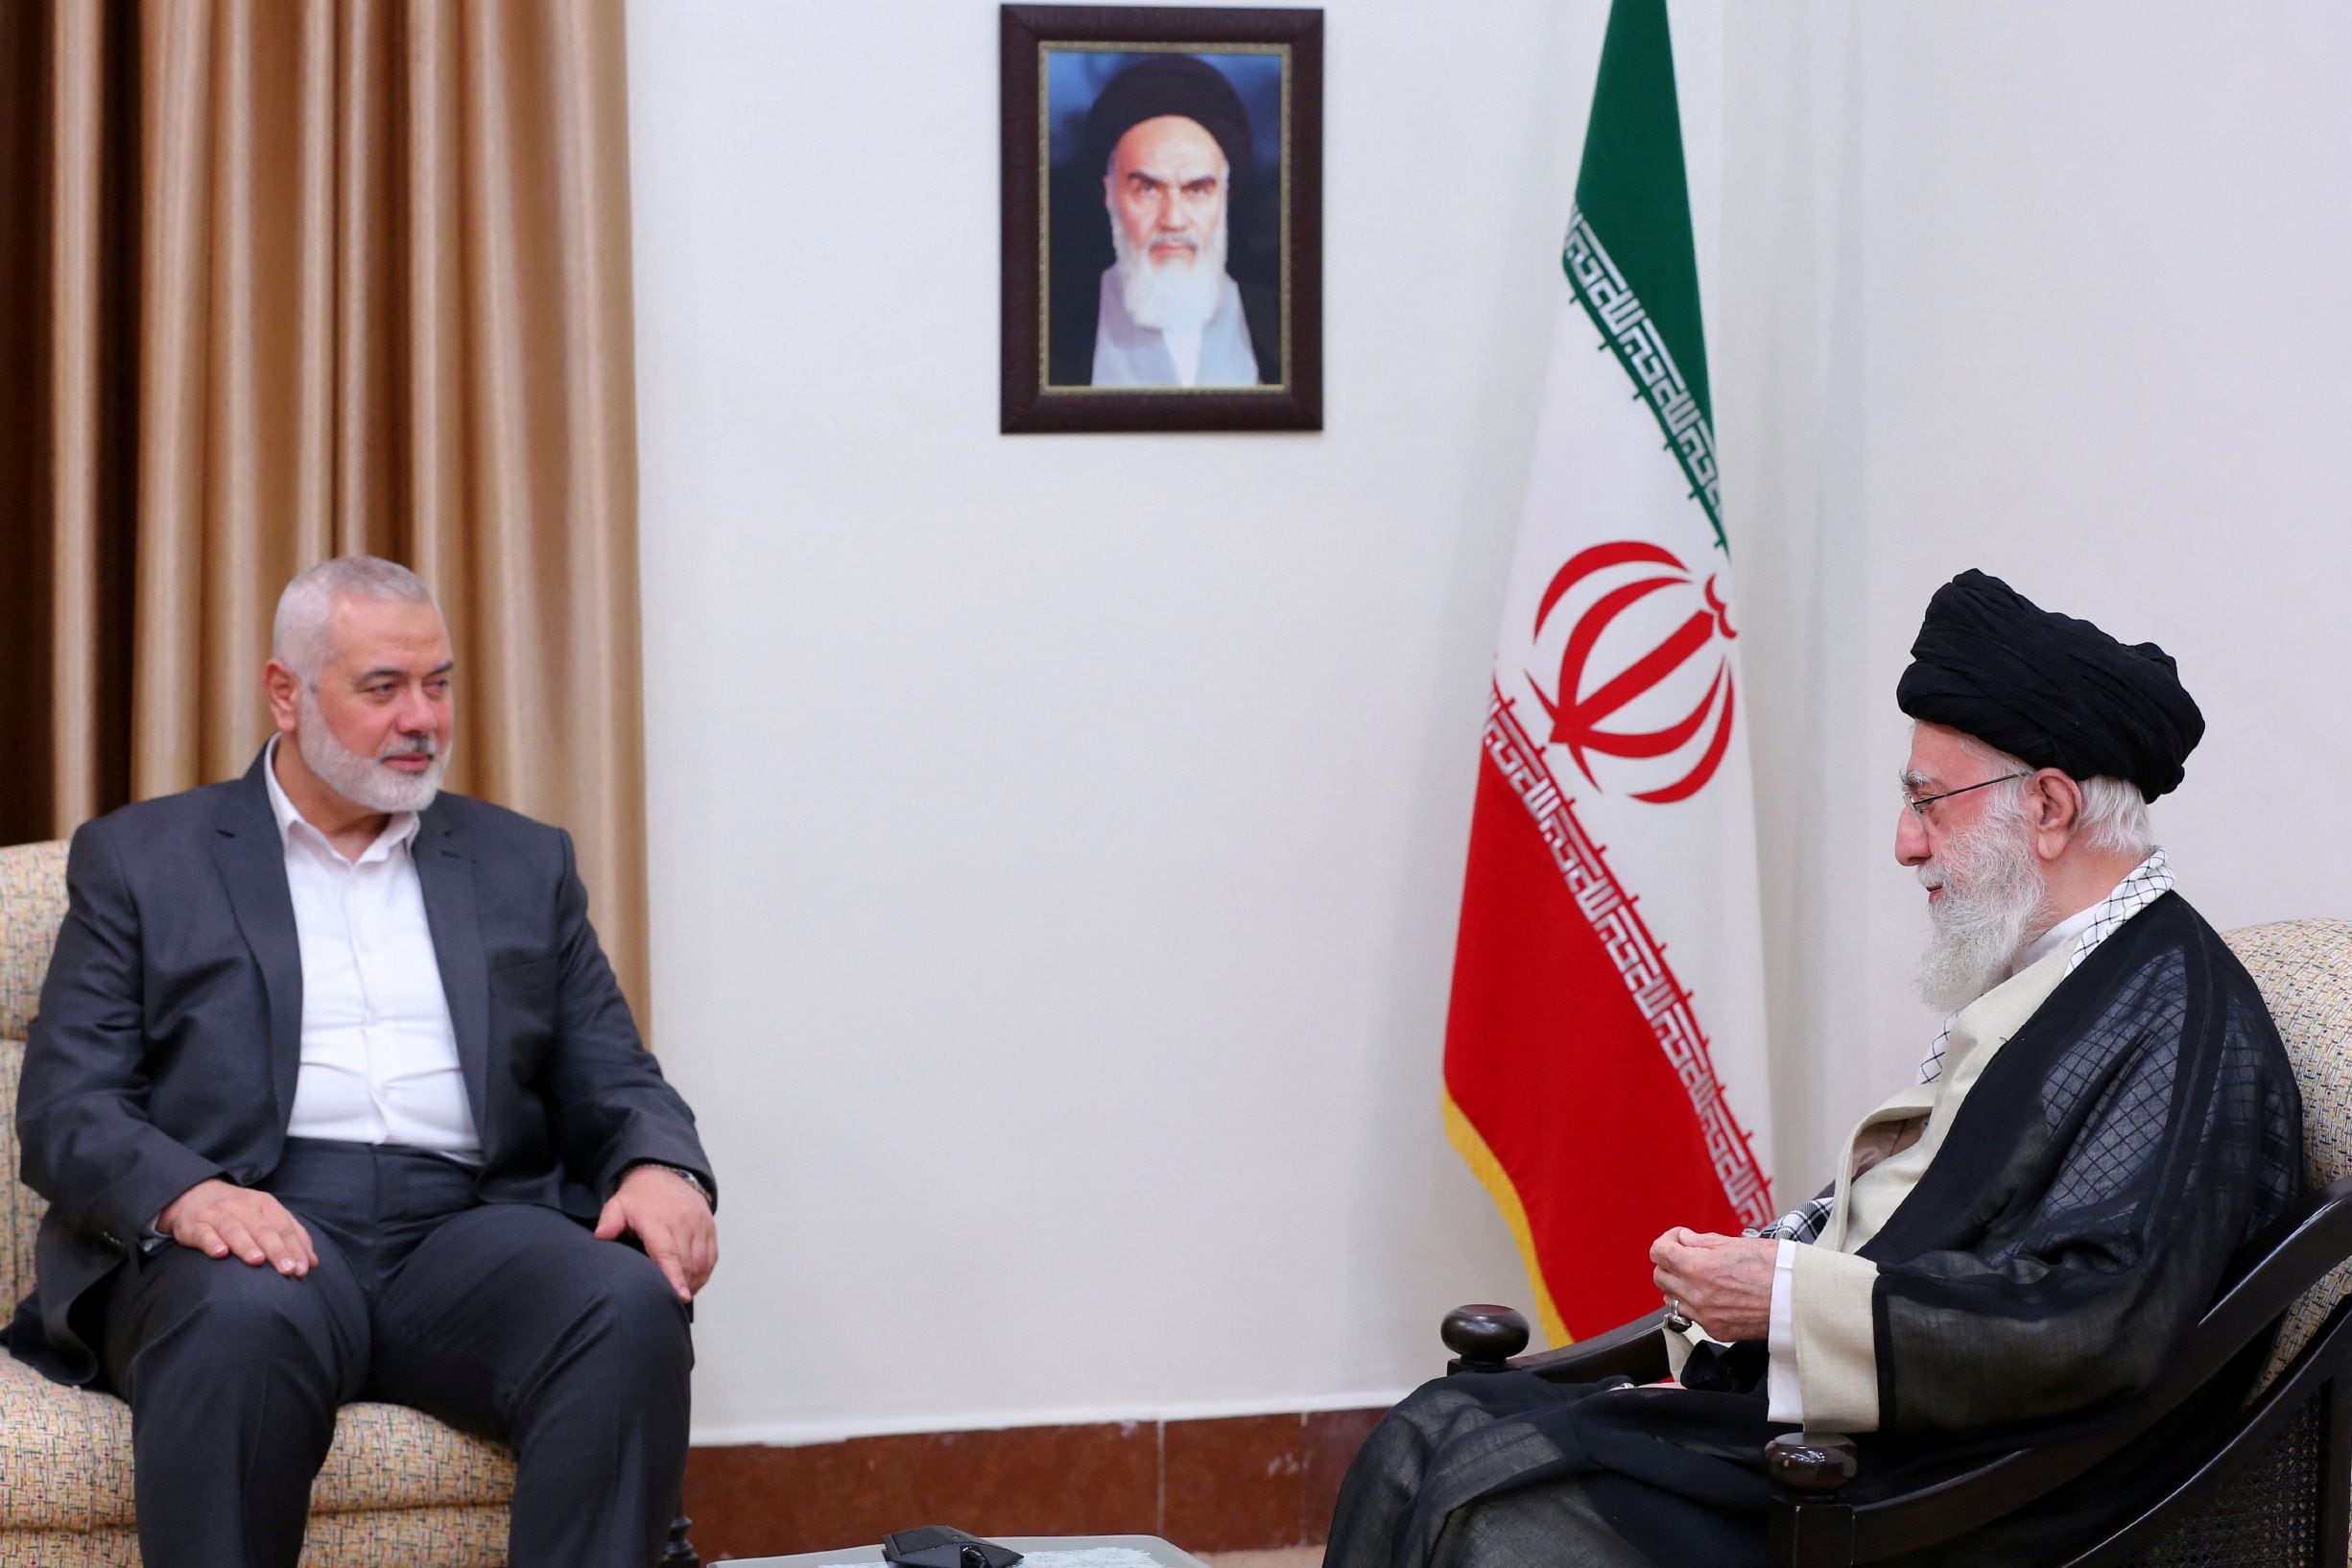 El encuentro reforzó la teoría que apunta contra Irán por haber estado detrás de la incursión del pasado sábado (REUTERS)